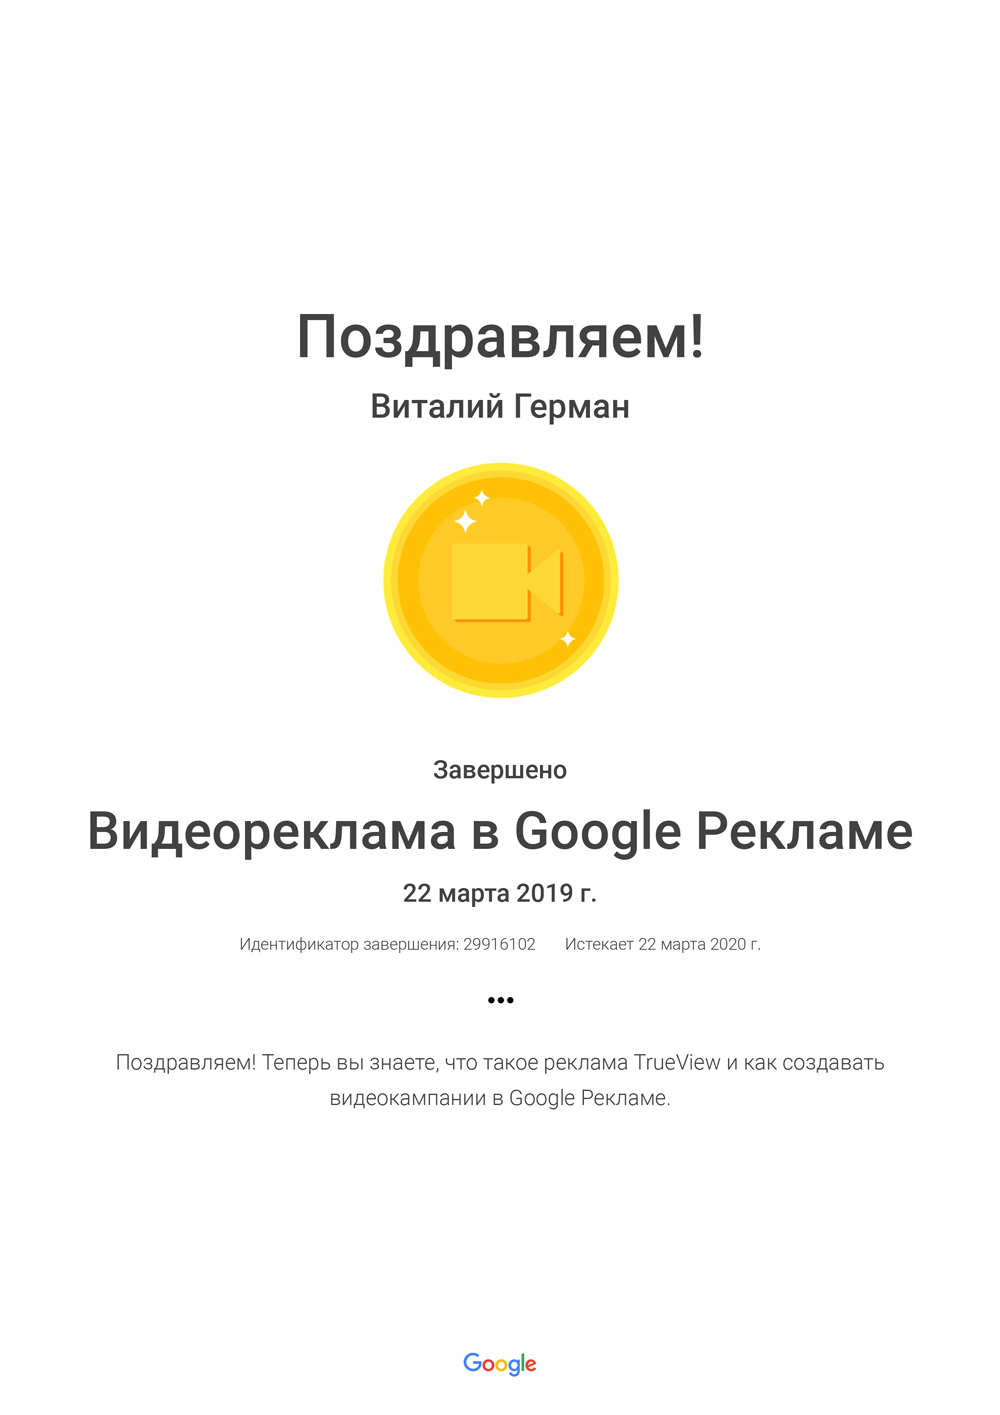 Сертификация Google Реклама видеореклама 2019